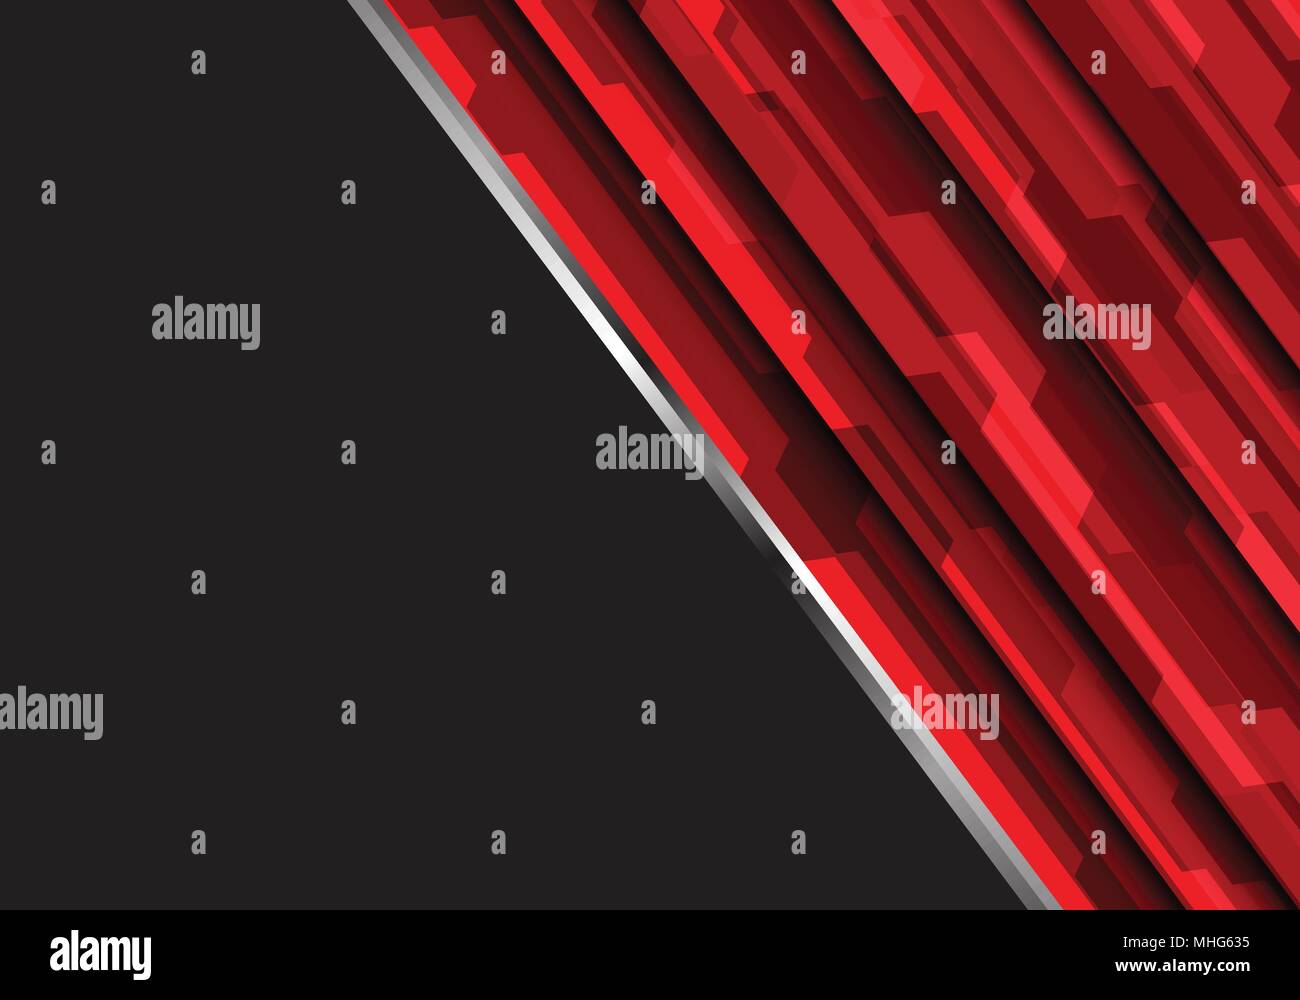 Résumé rouge futuriste polygone gris foncé sur la technologie moderne design background illustration vectorielle. Illustration de Vecteur